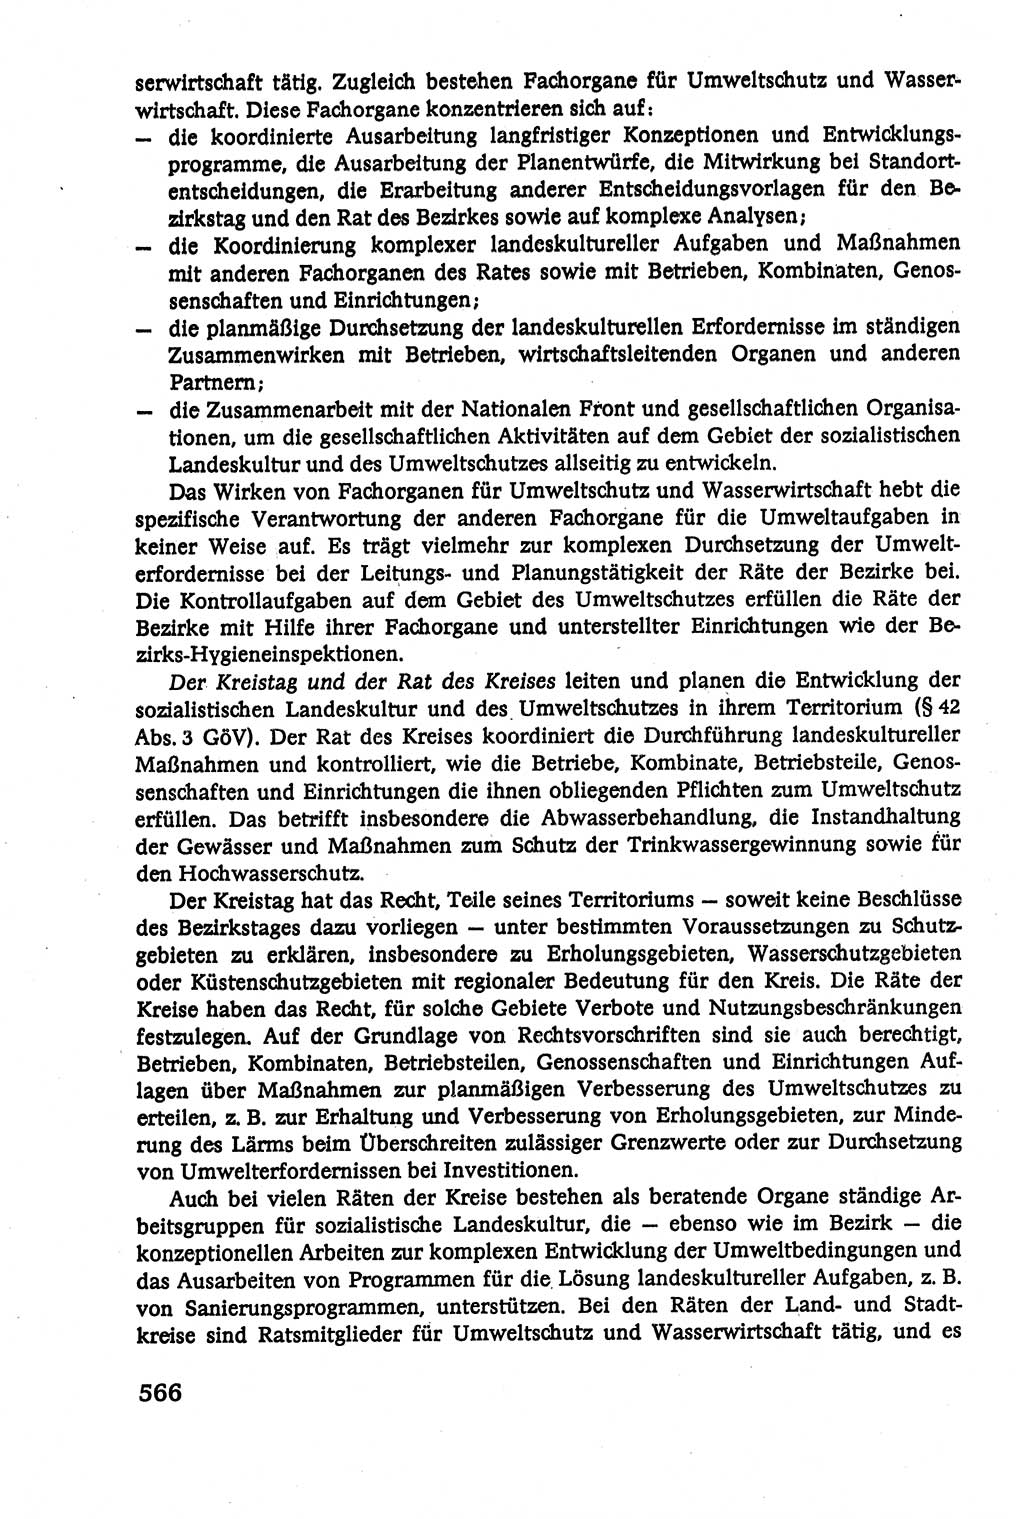 Verwaltungsrecht [Deutsche Demokratische Republik (DDR)], Lehrbuch 1979, Seite 566 (Verw.-R. DDR Lb. 1979, S. 566)